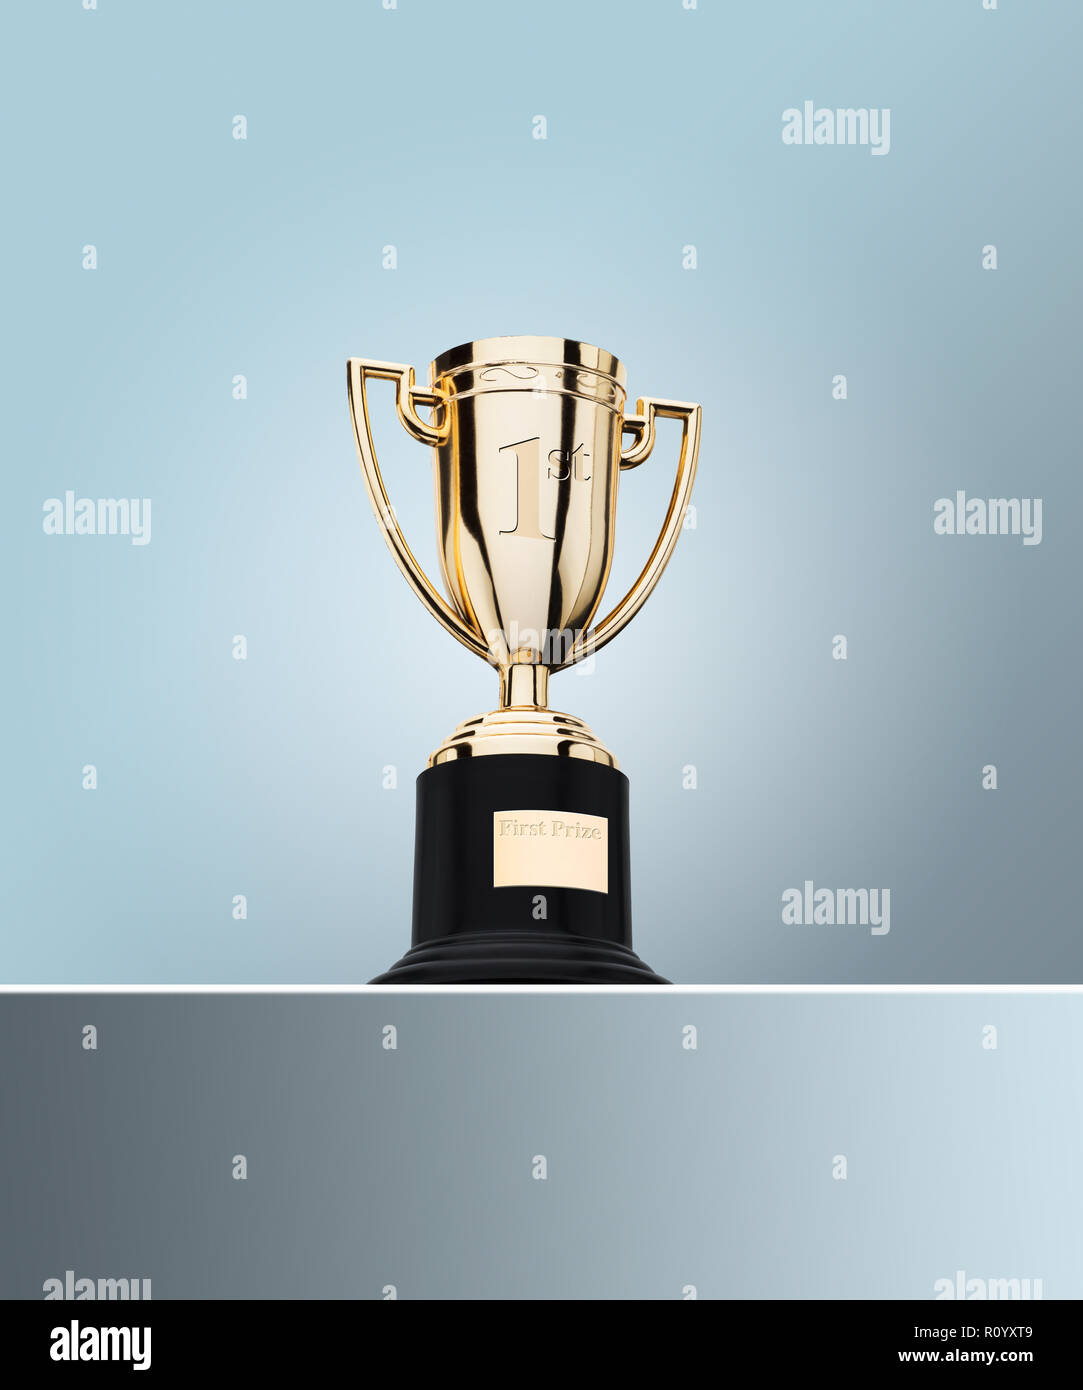 Der erste Preis Gold Cup Trophäe am Tisch gegen grauer Hintergrund Stockfoto